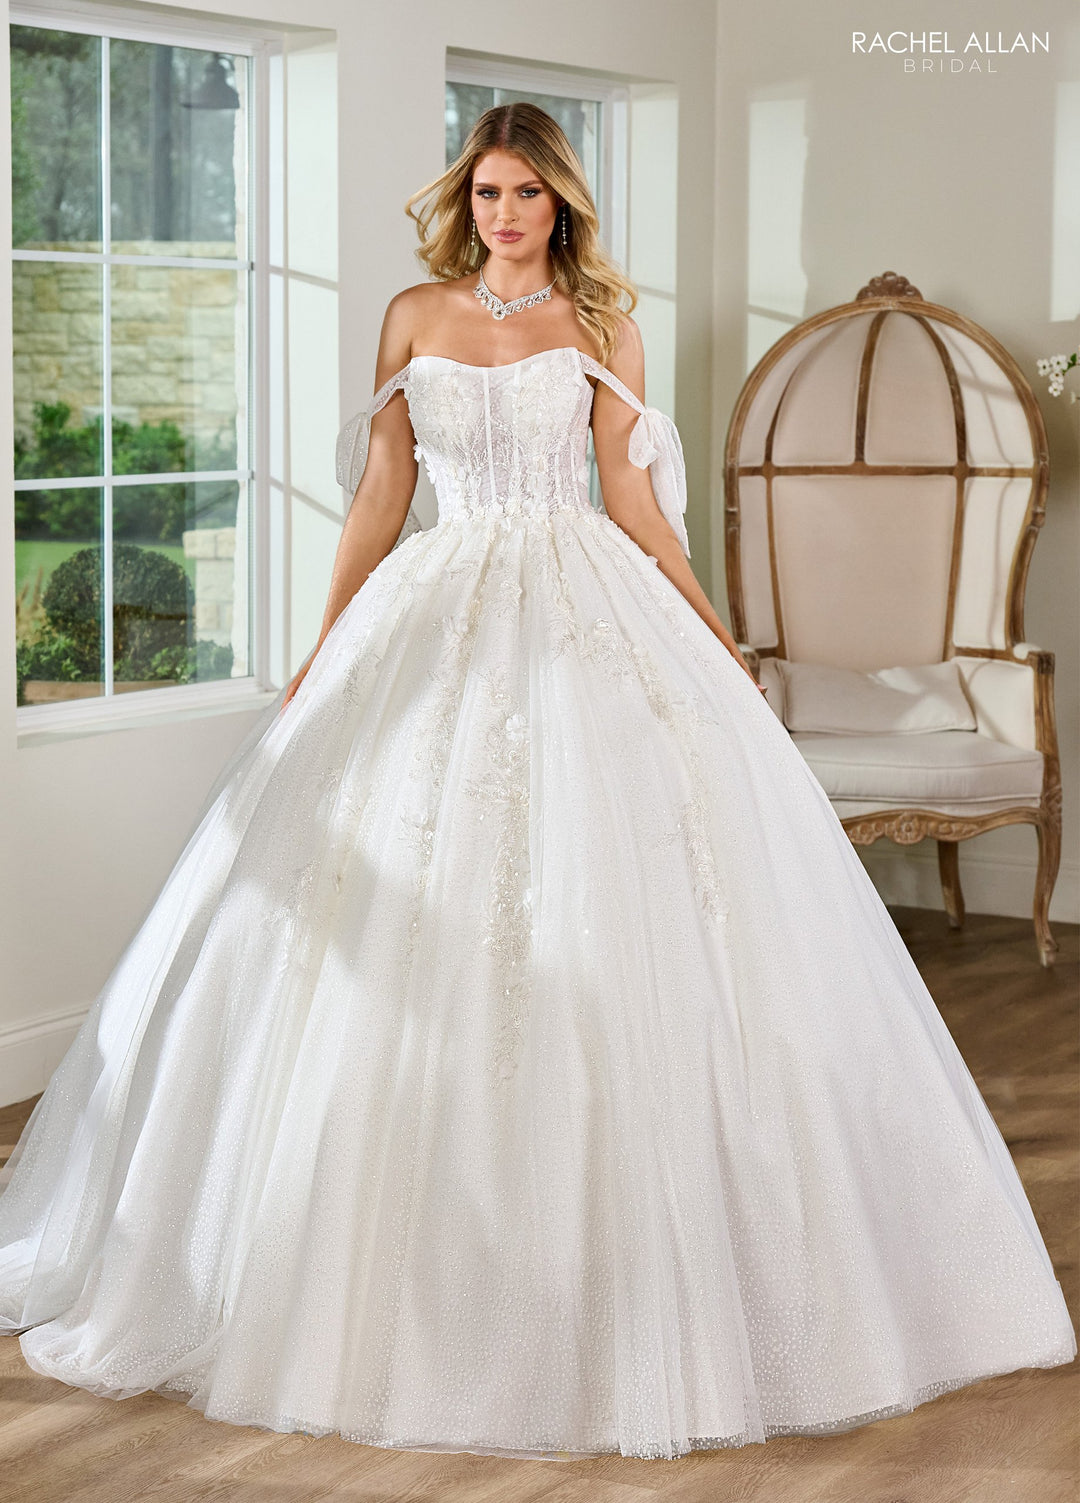 3D Floral Off Shoulder Bridal Gown by Rachel Allan RB6155